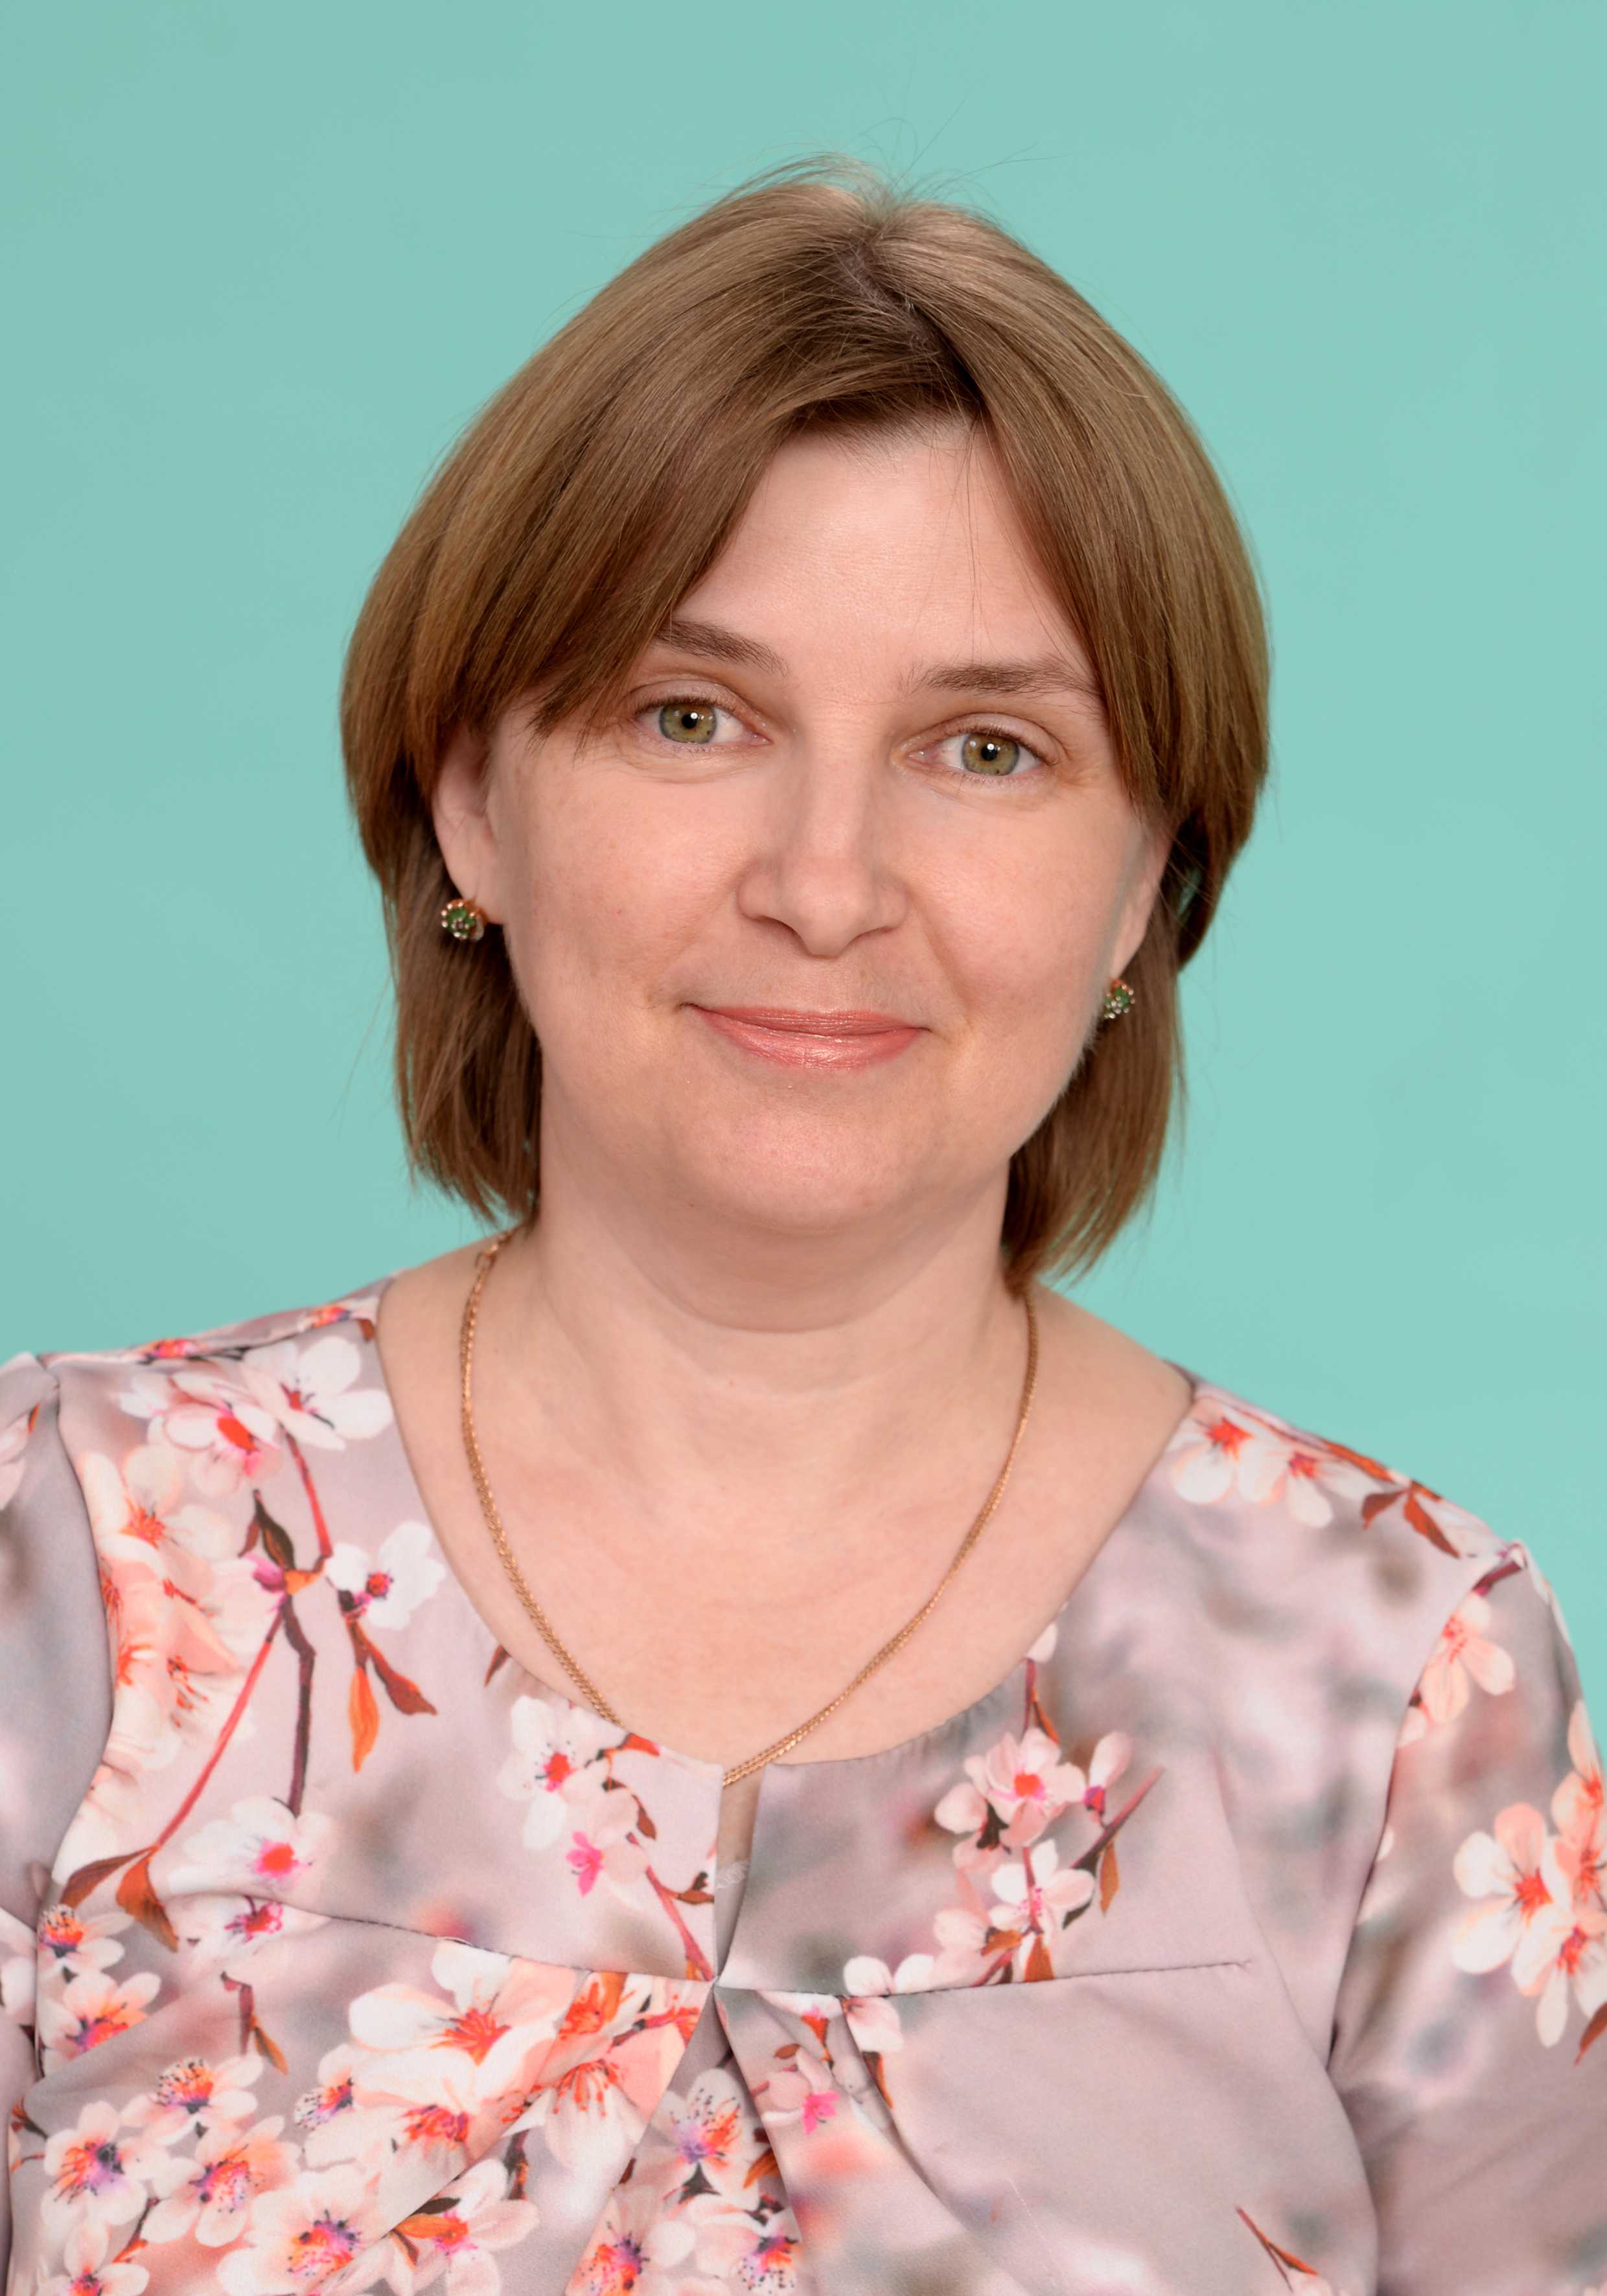 Азиатцева Наталья Ильинична.